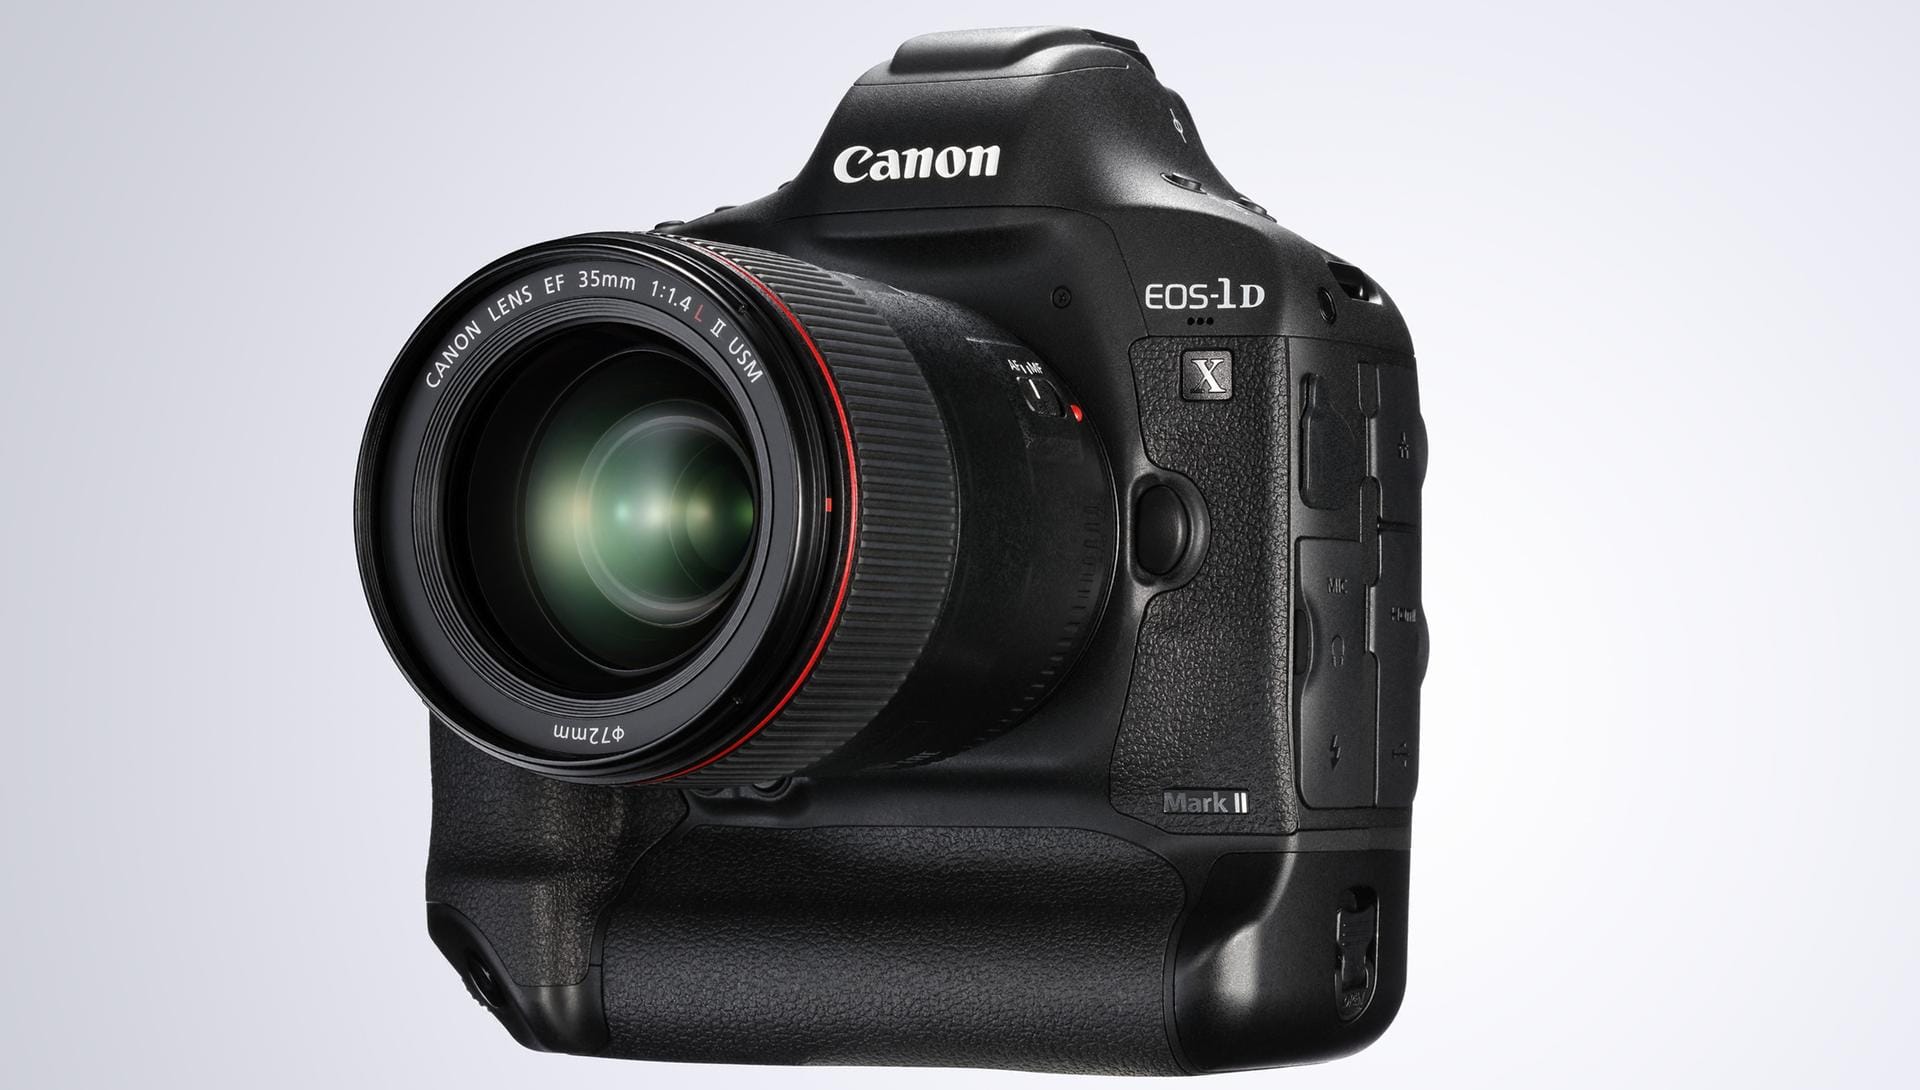 Den Preis der besten Profi-DSLR heimste die Canon EOS-1D X Mark II (Gehäuse 6300 Euro) ein.